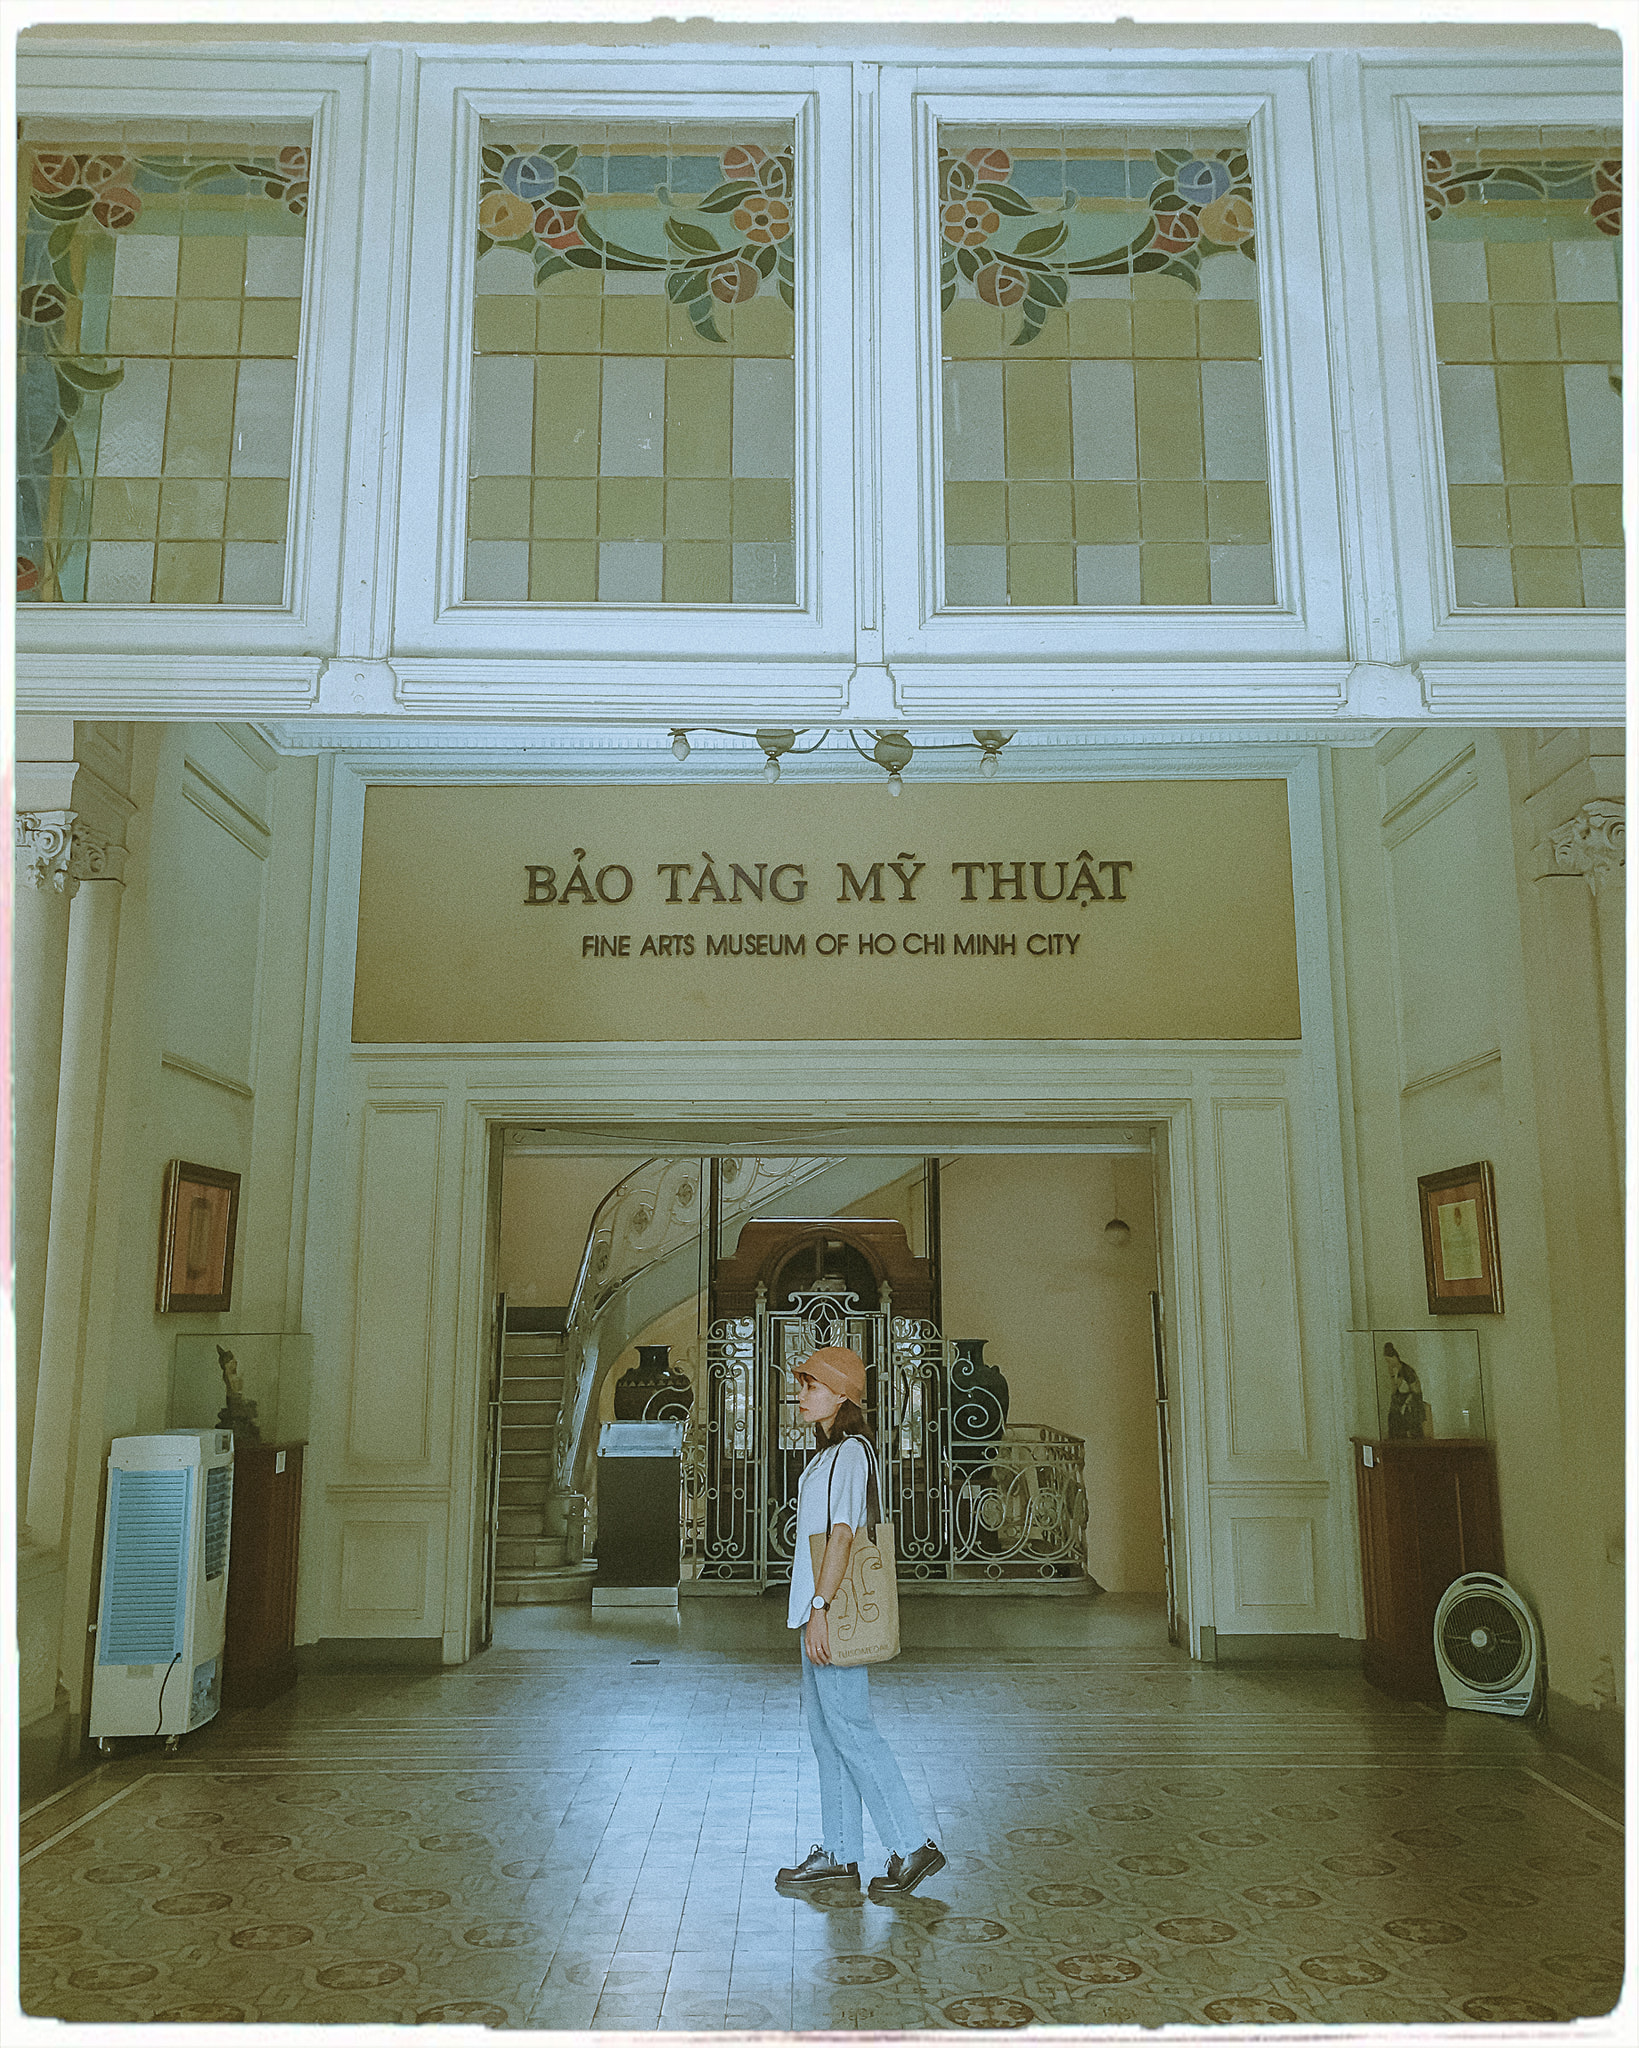 Hết dịch rồi mình đi Bảo tàng Mỹ thuật Thành phố Hồ Chí Minh